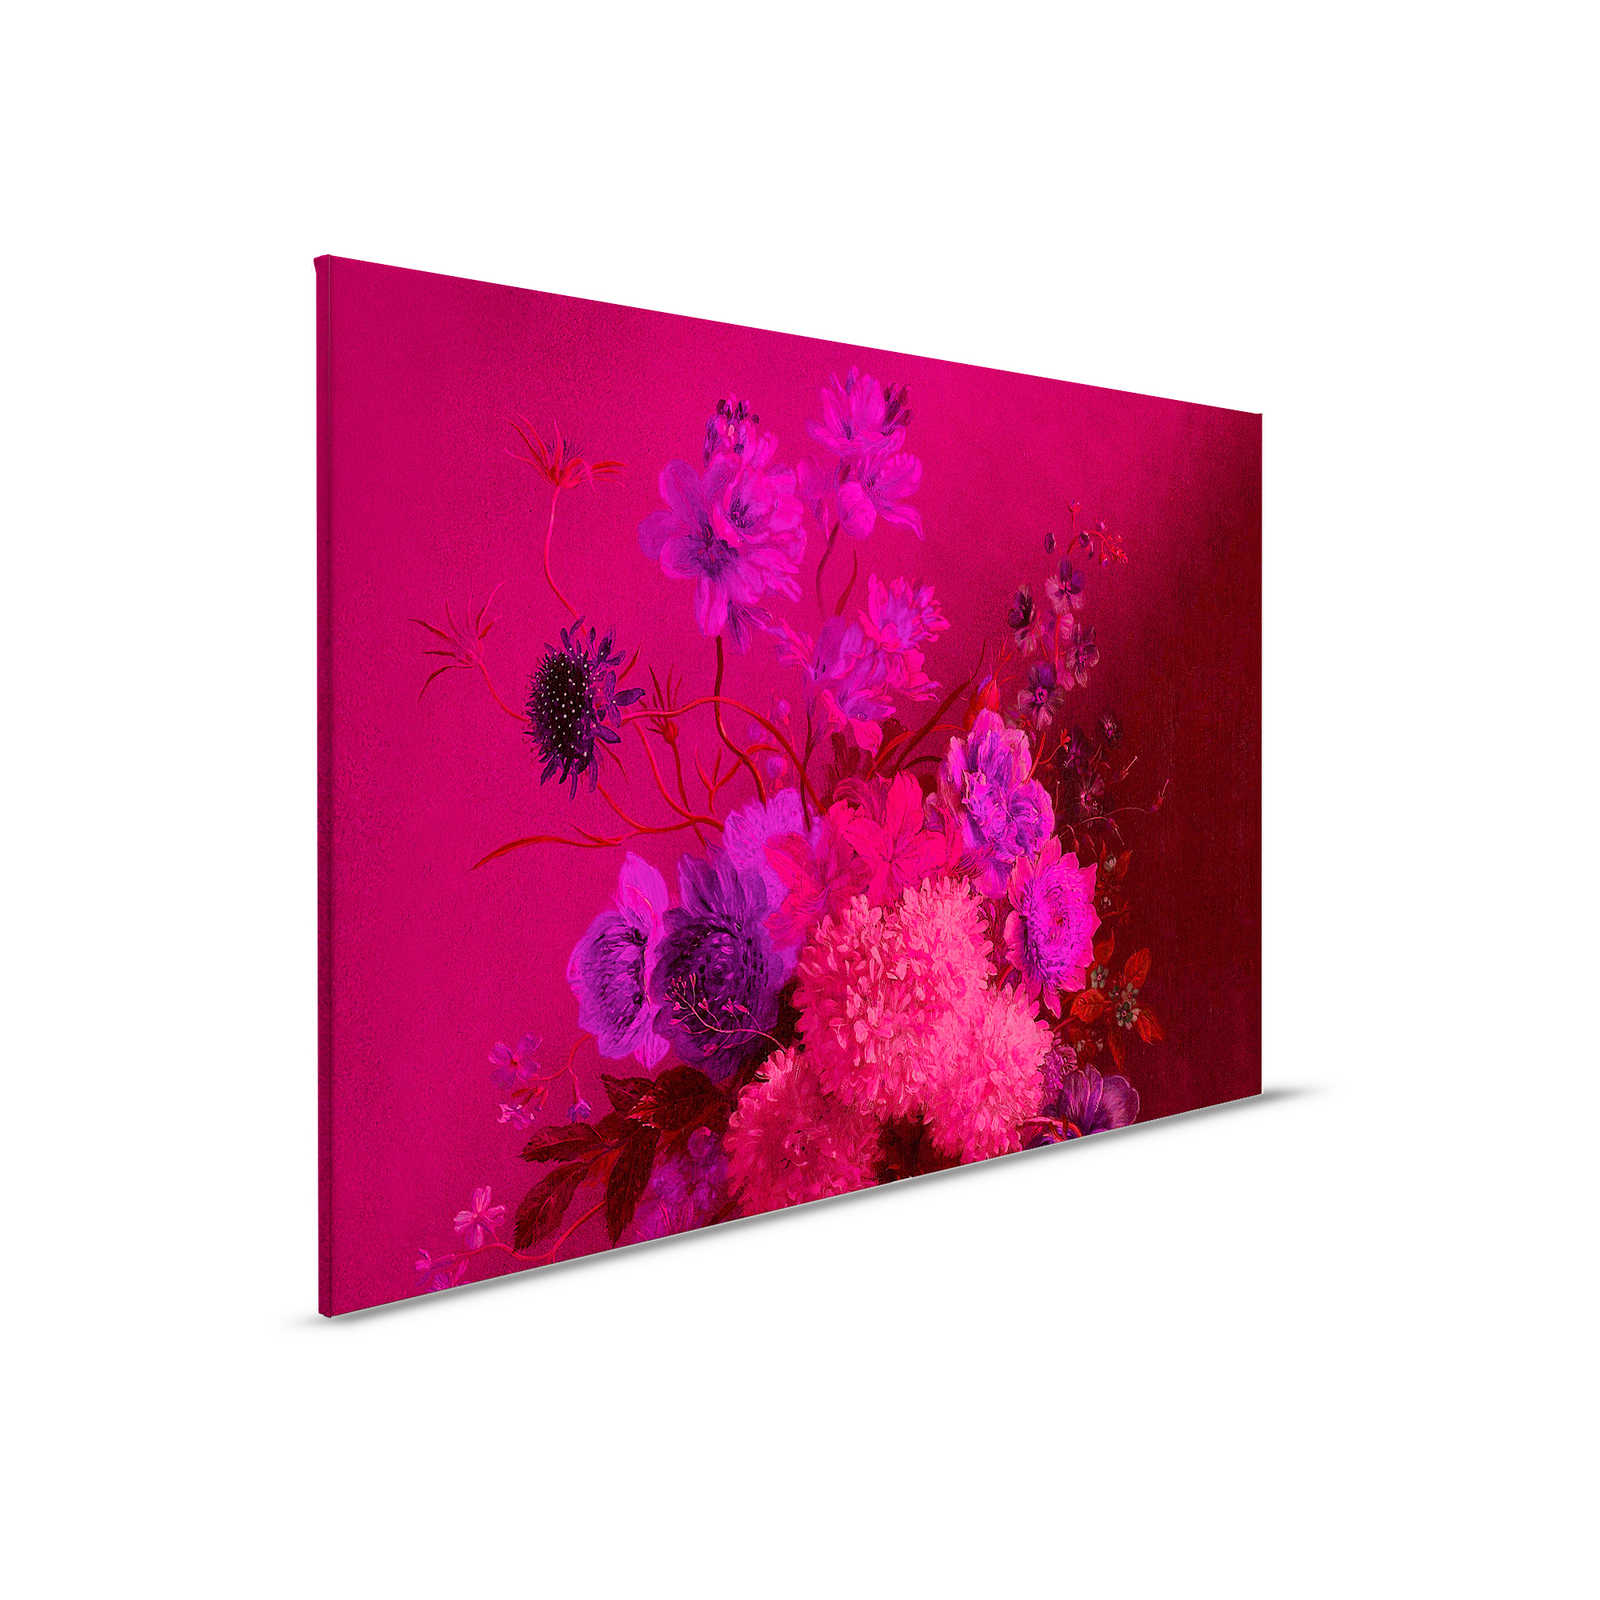         Neon Leinwandbild mit Blumen Stillleben | Bouquet Vibran 2 – 0,90 m x 0,60 m
    